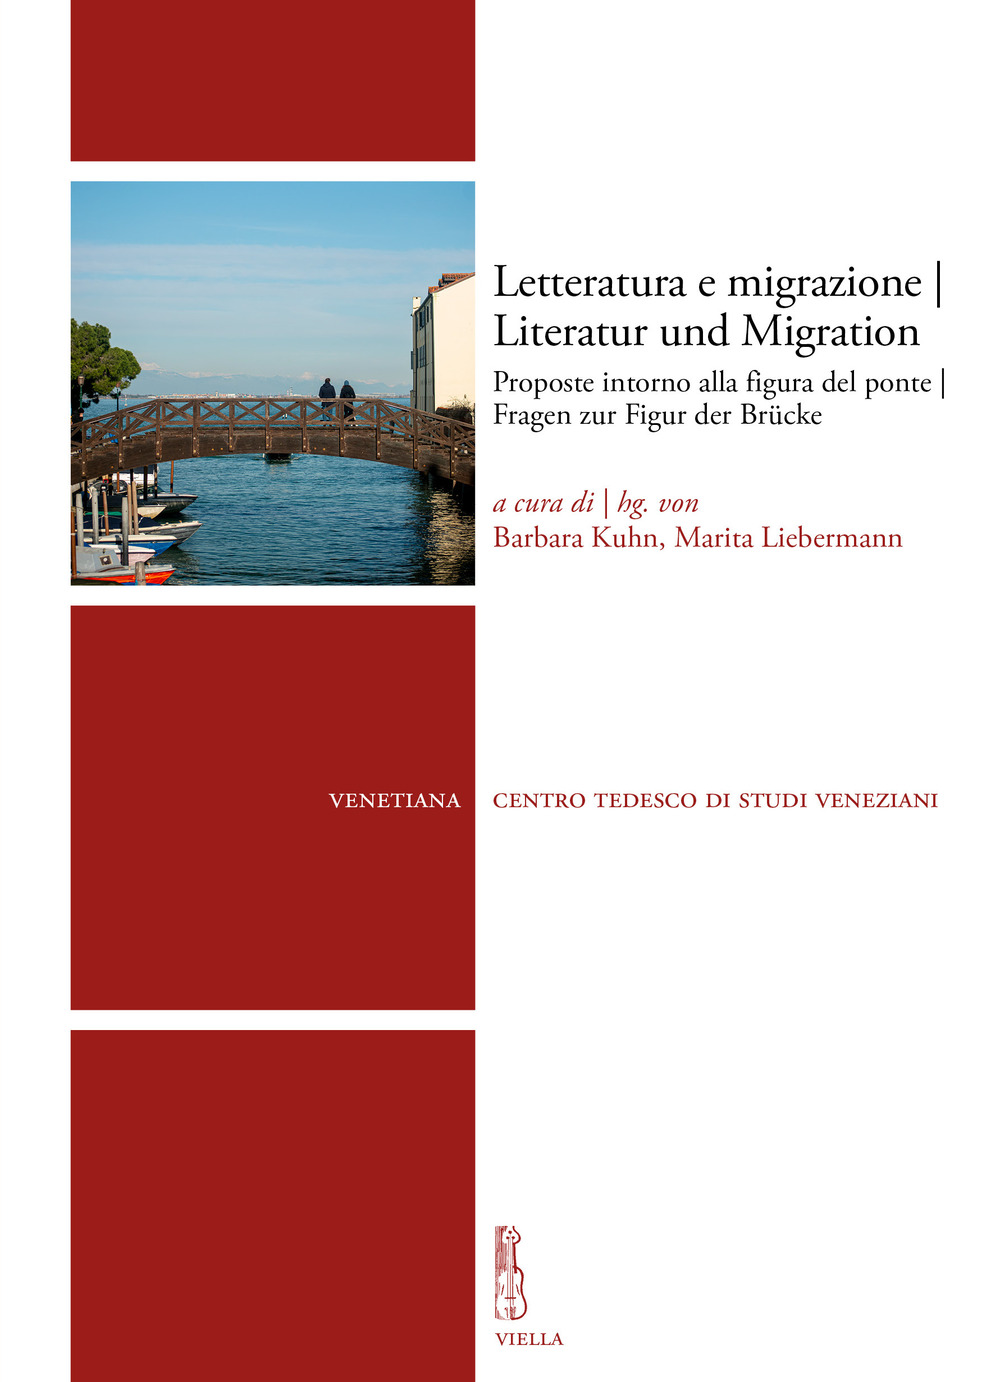 Letteratura e migrazione. Proposte intorno alla figura del ponte-Literatur und Migration. Fragen zur Figur der Brücke